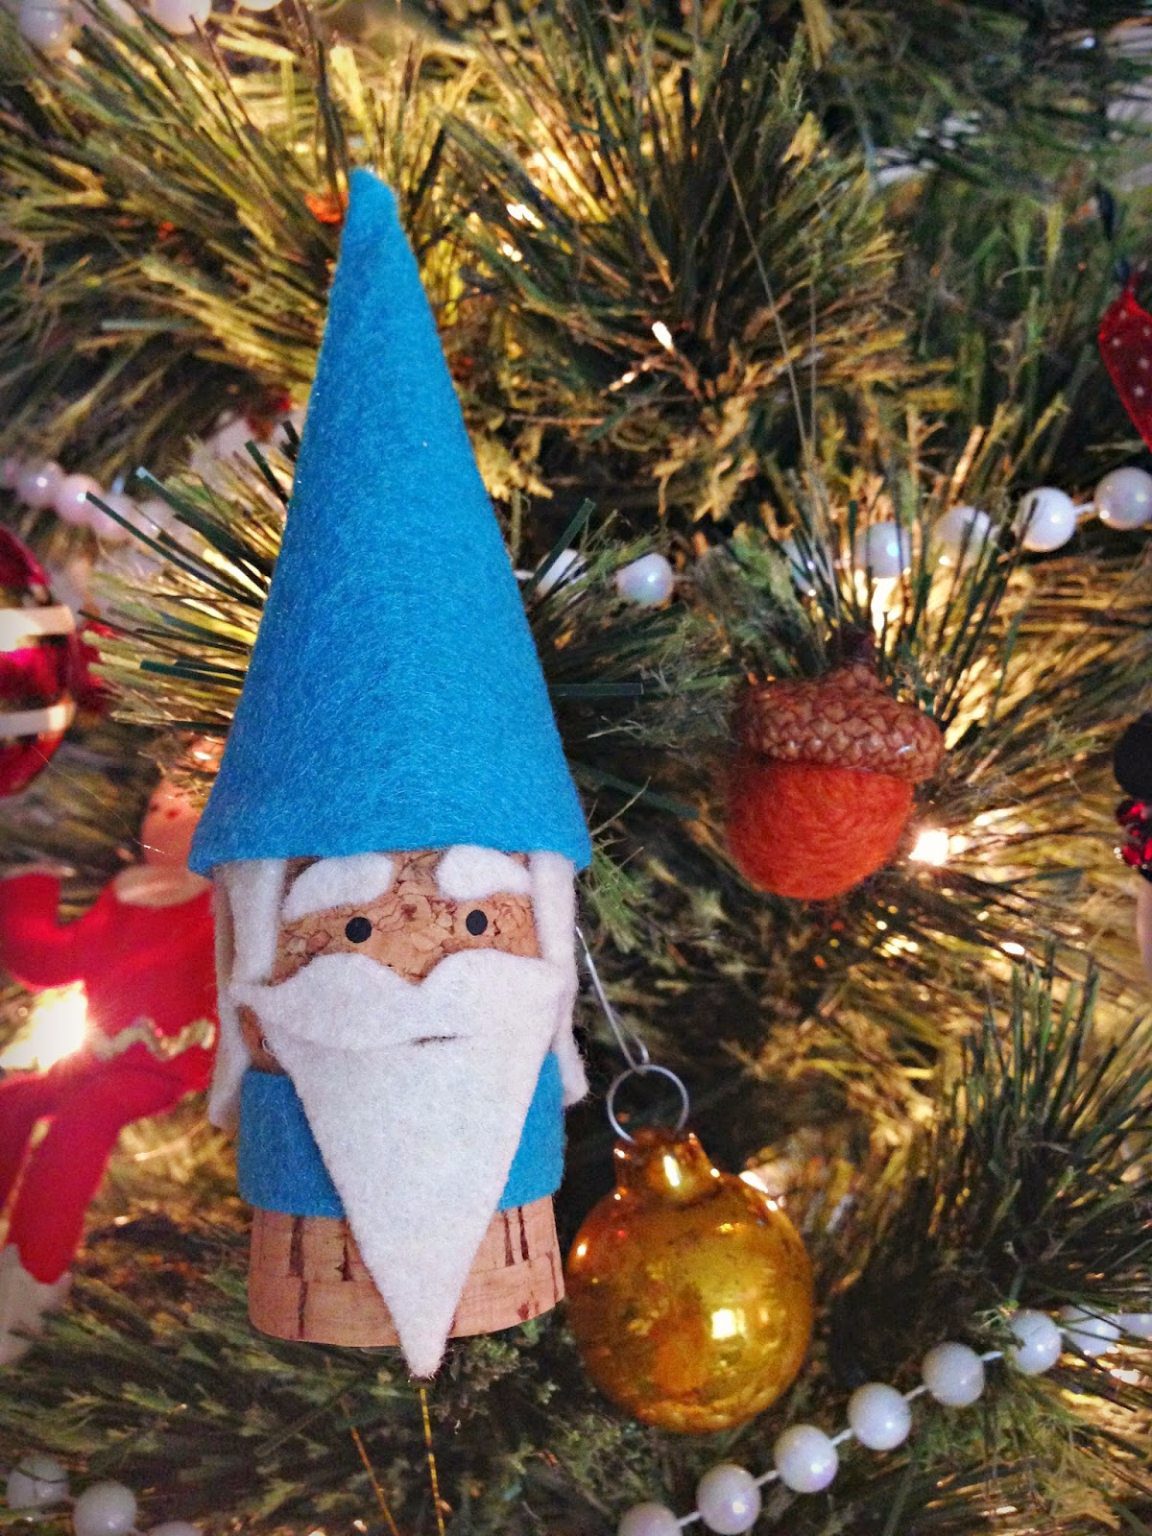 cork ornaments - gnomes